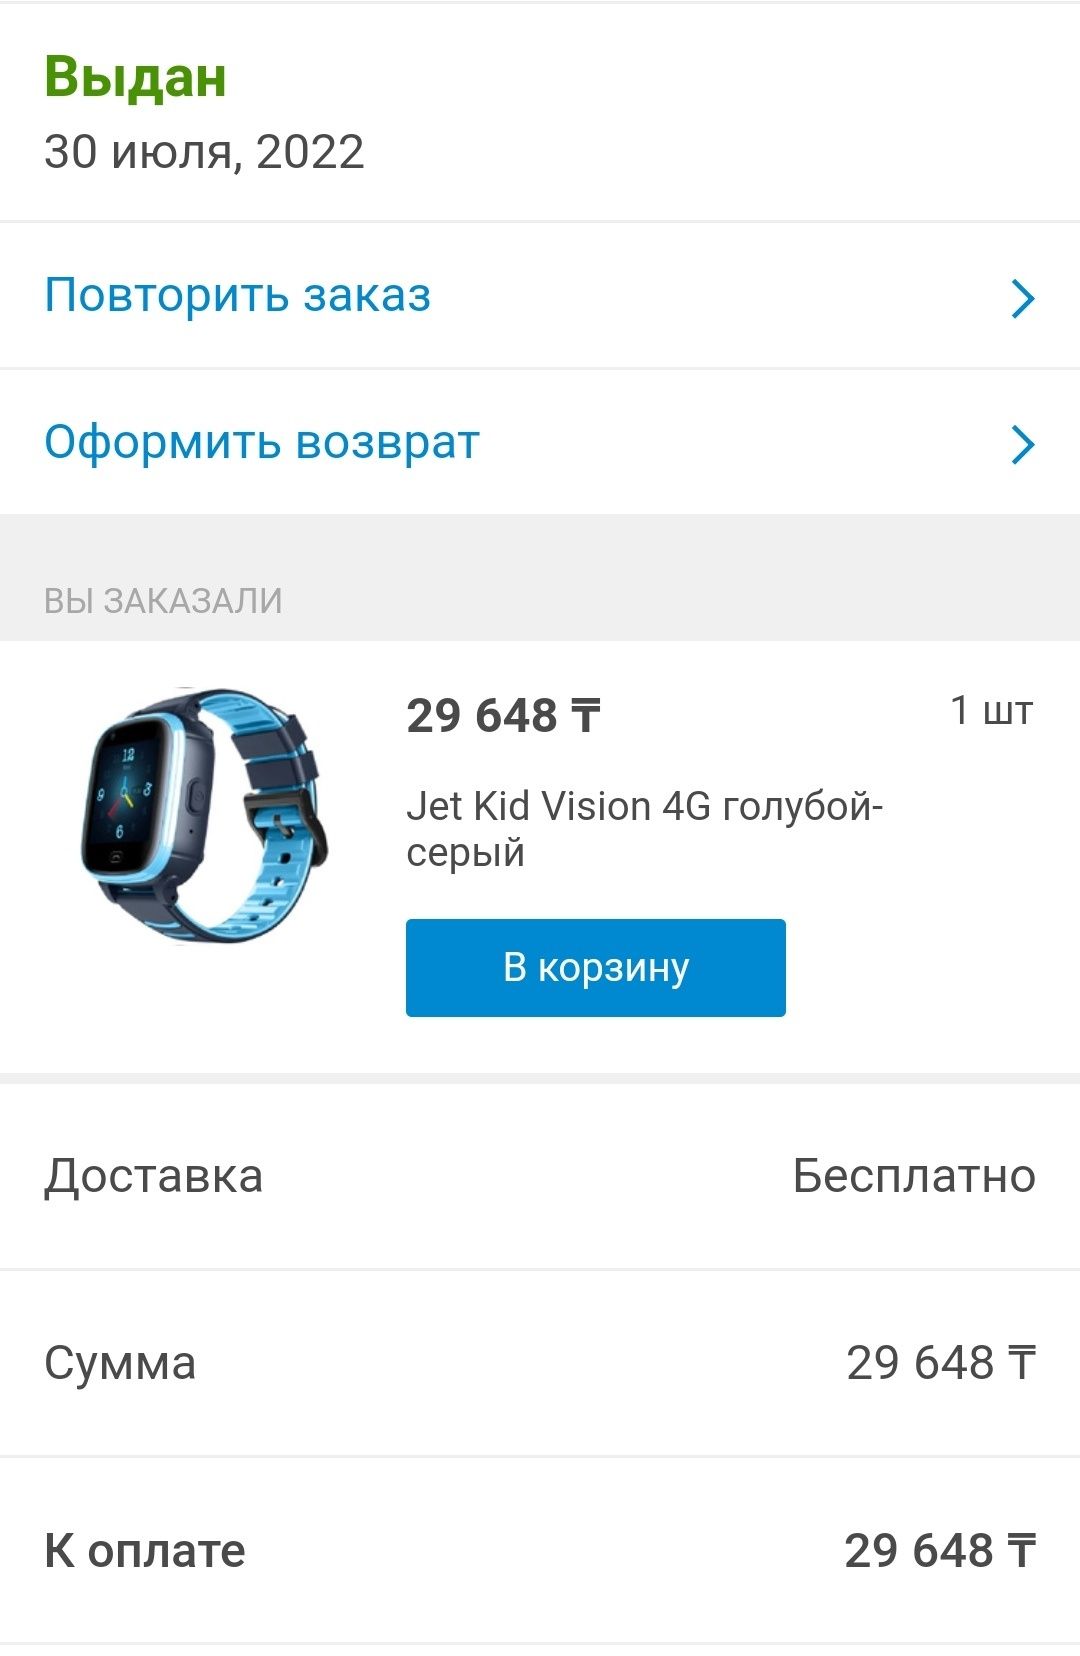 Смарт-часы Jet Kid Vision 4G голубой-серый